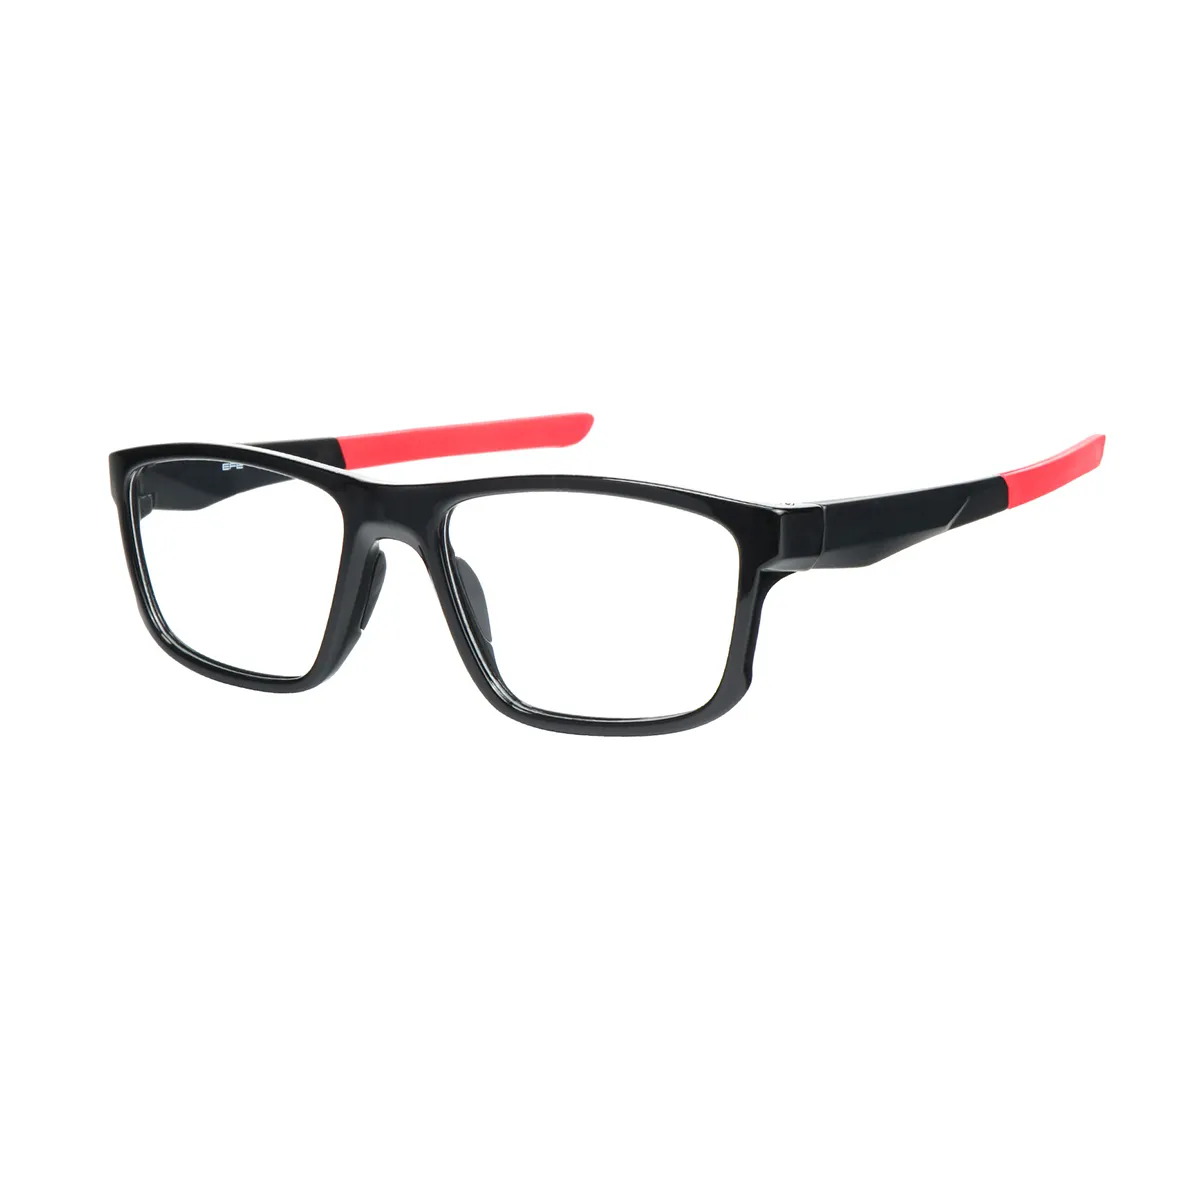 Darwin - Rectangle Black-Red Glasses for Men